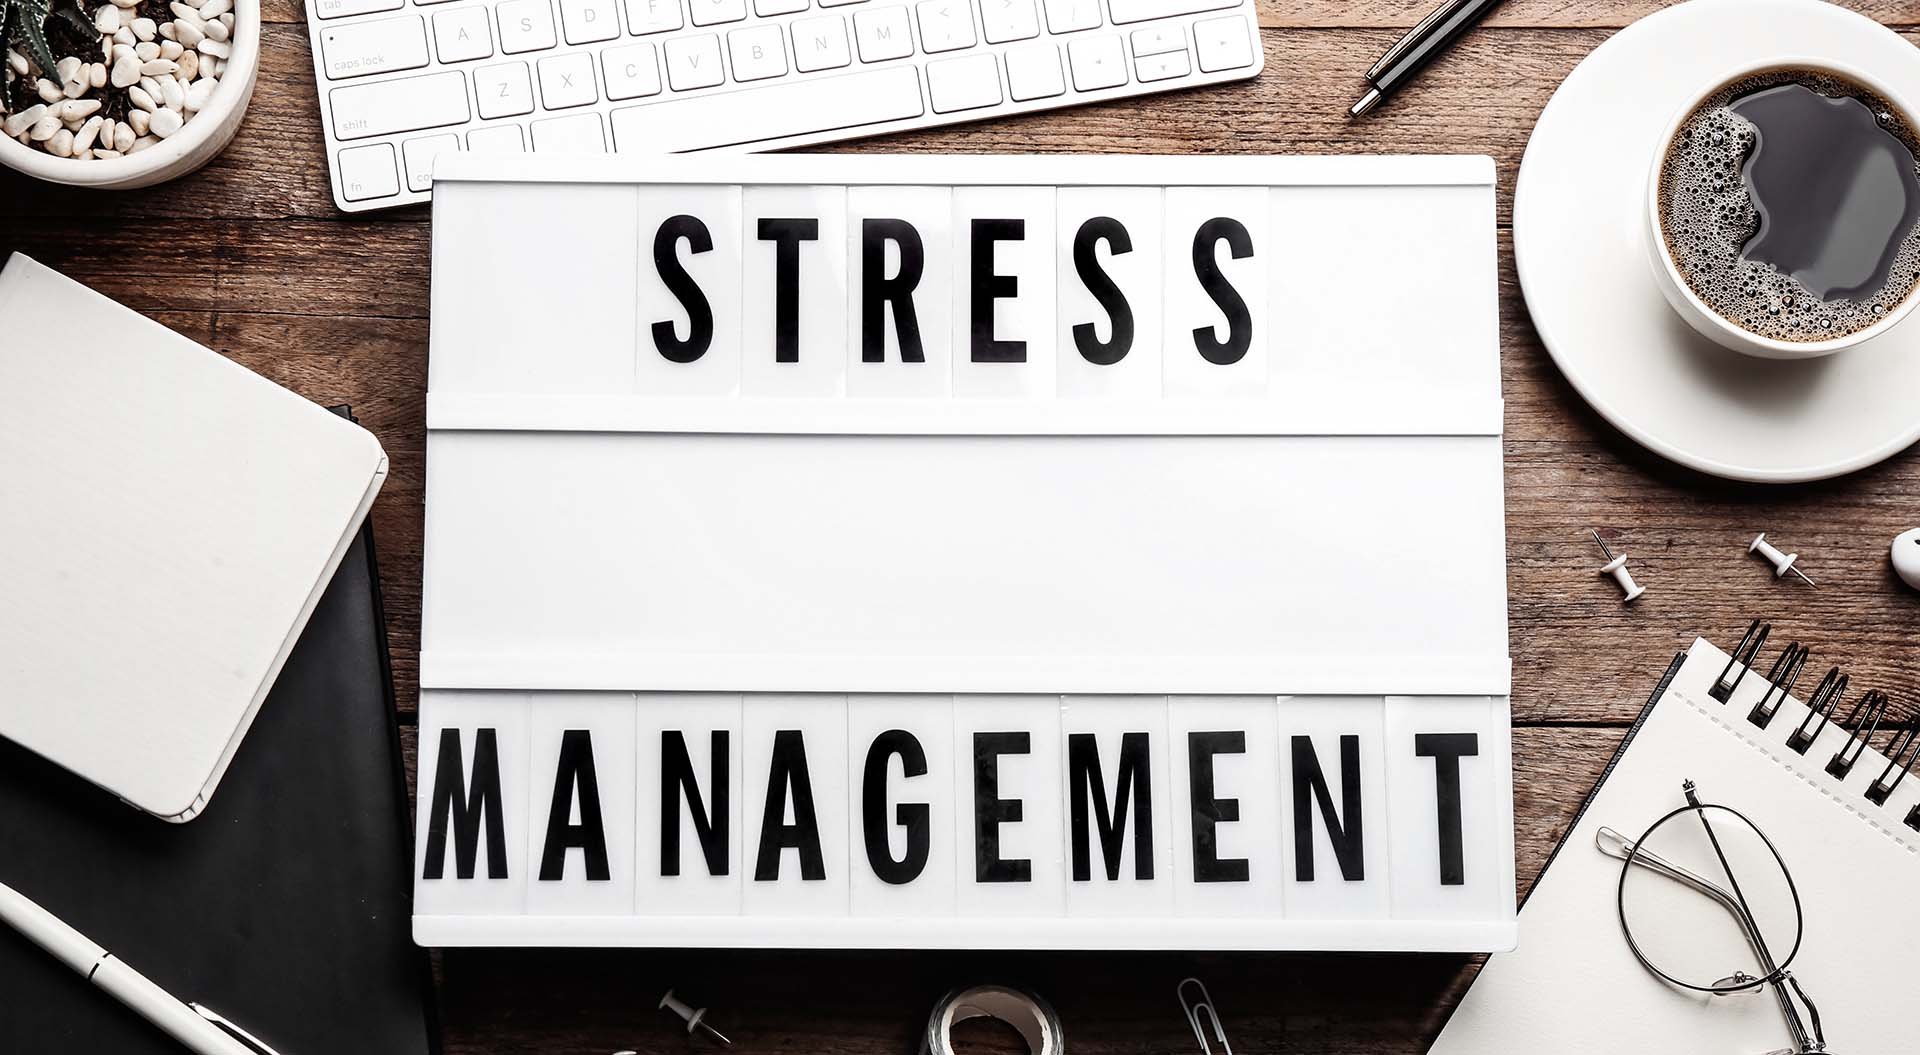 ストレスマネジメントとは? ストレス管理の方法と企業が取り組むメリット